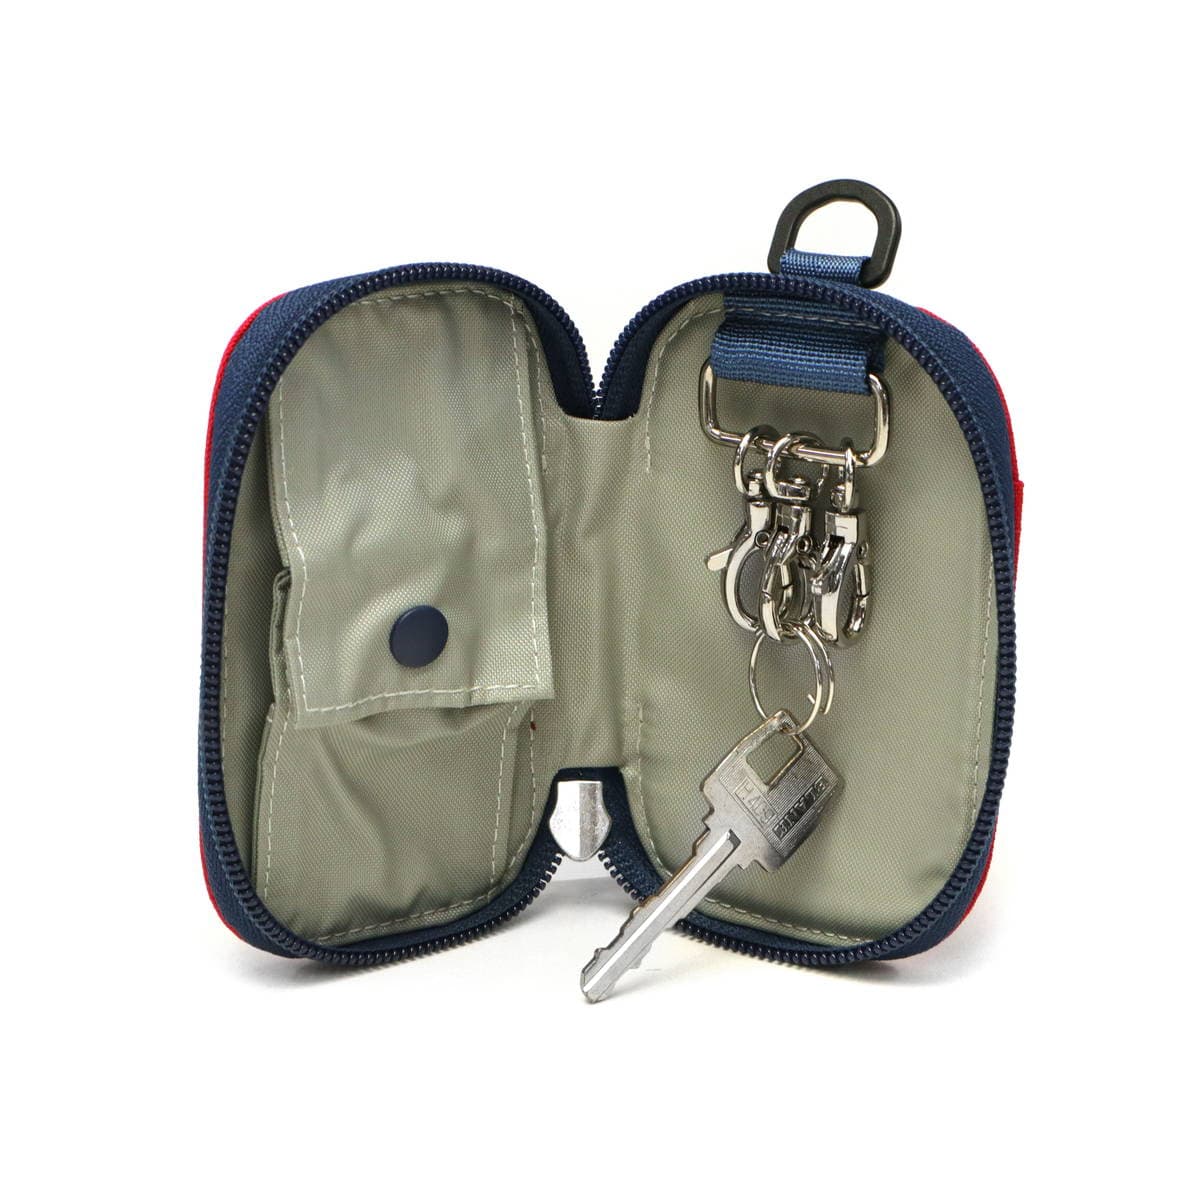 【日本正規品】CHUMS チャムス Recycle Oval Key Zip Case キーケース CH60-3580